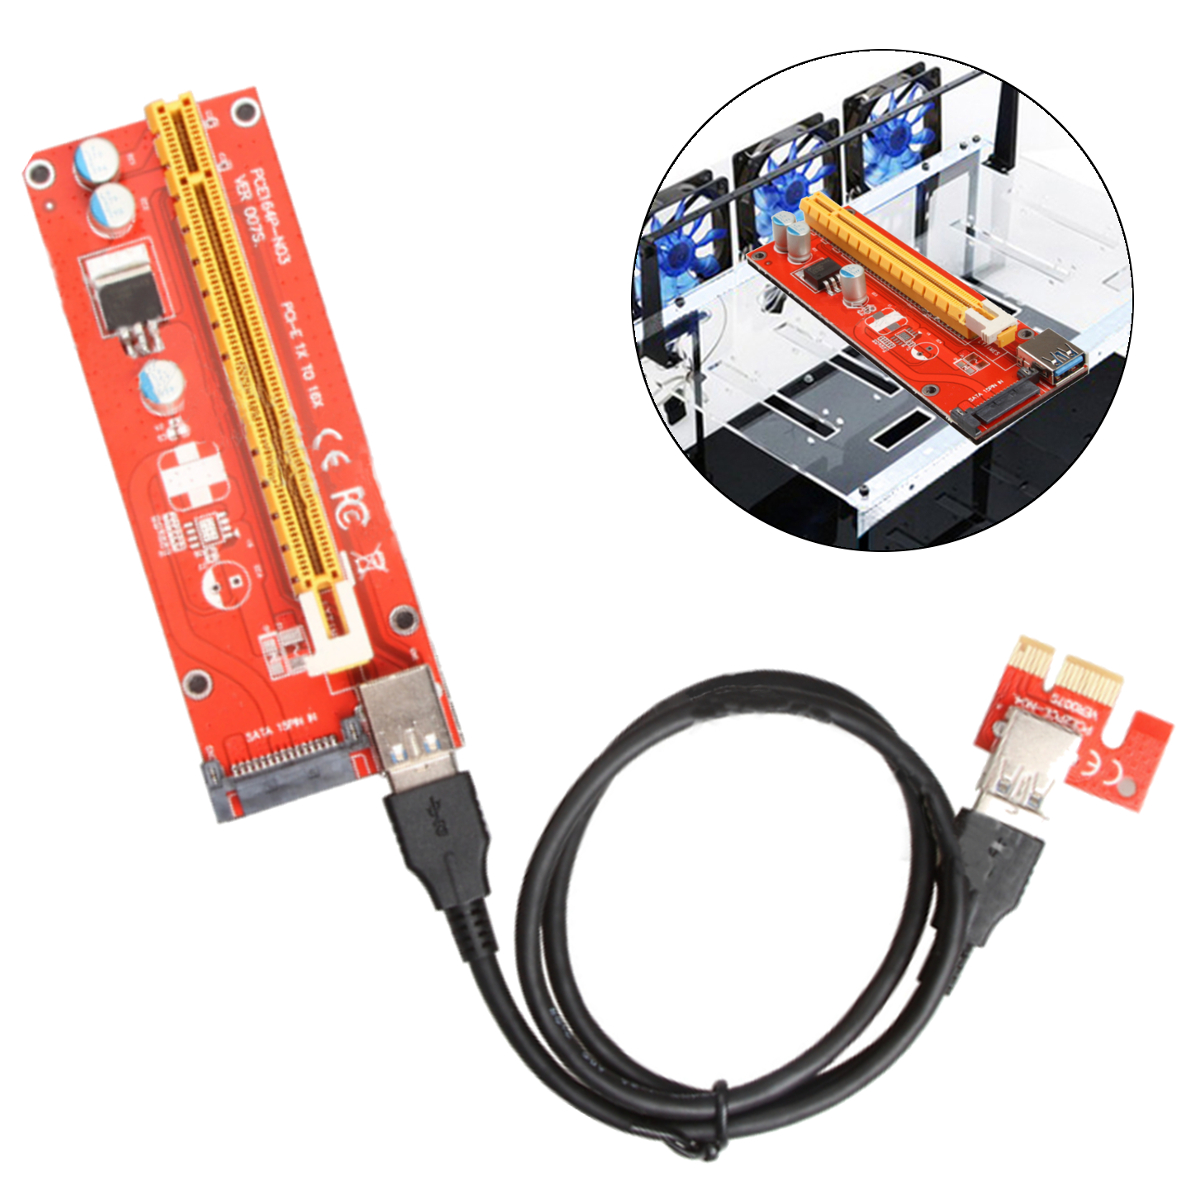 

USB 3.0 Pcie PCI-E Express 1x до 16x Extender Riser Card Adapter Power BTC Расширительный кабель Mining